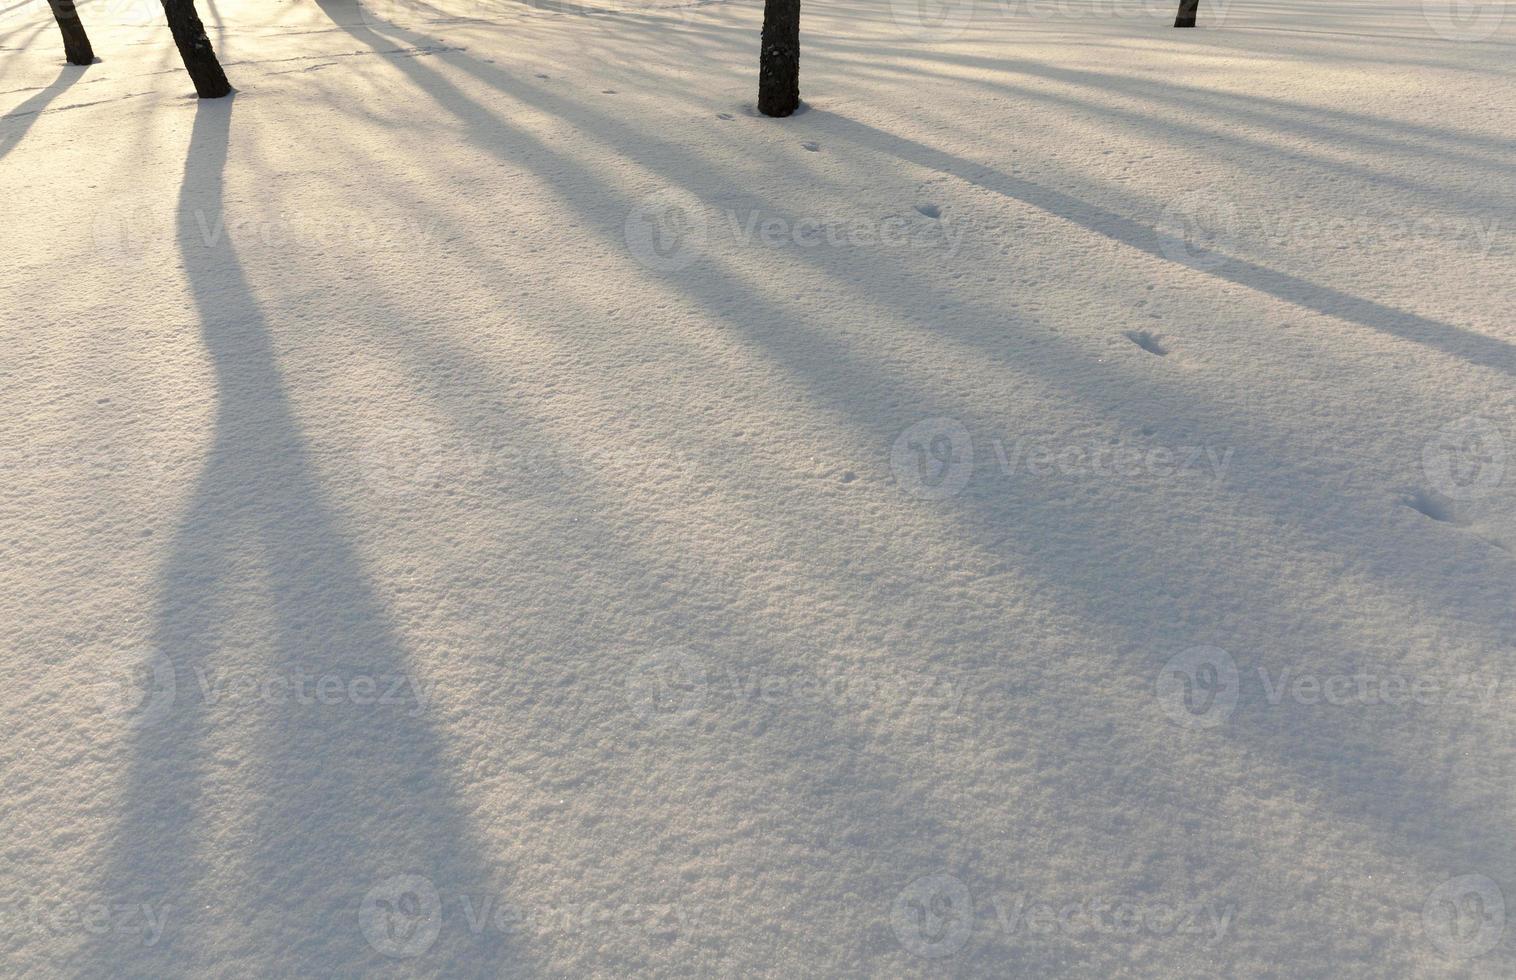 nevicate nella stagione invernale e neve bianca soffice e fredda foto